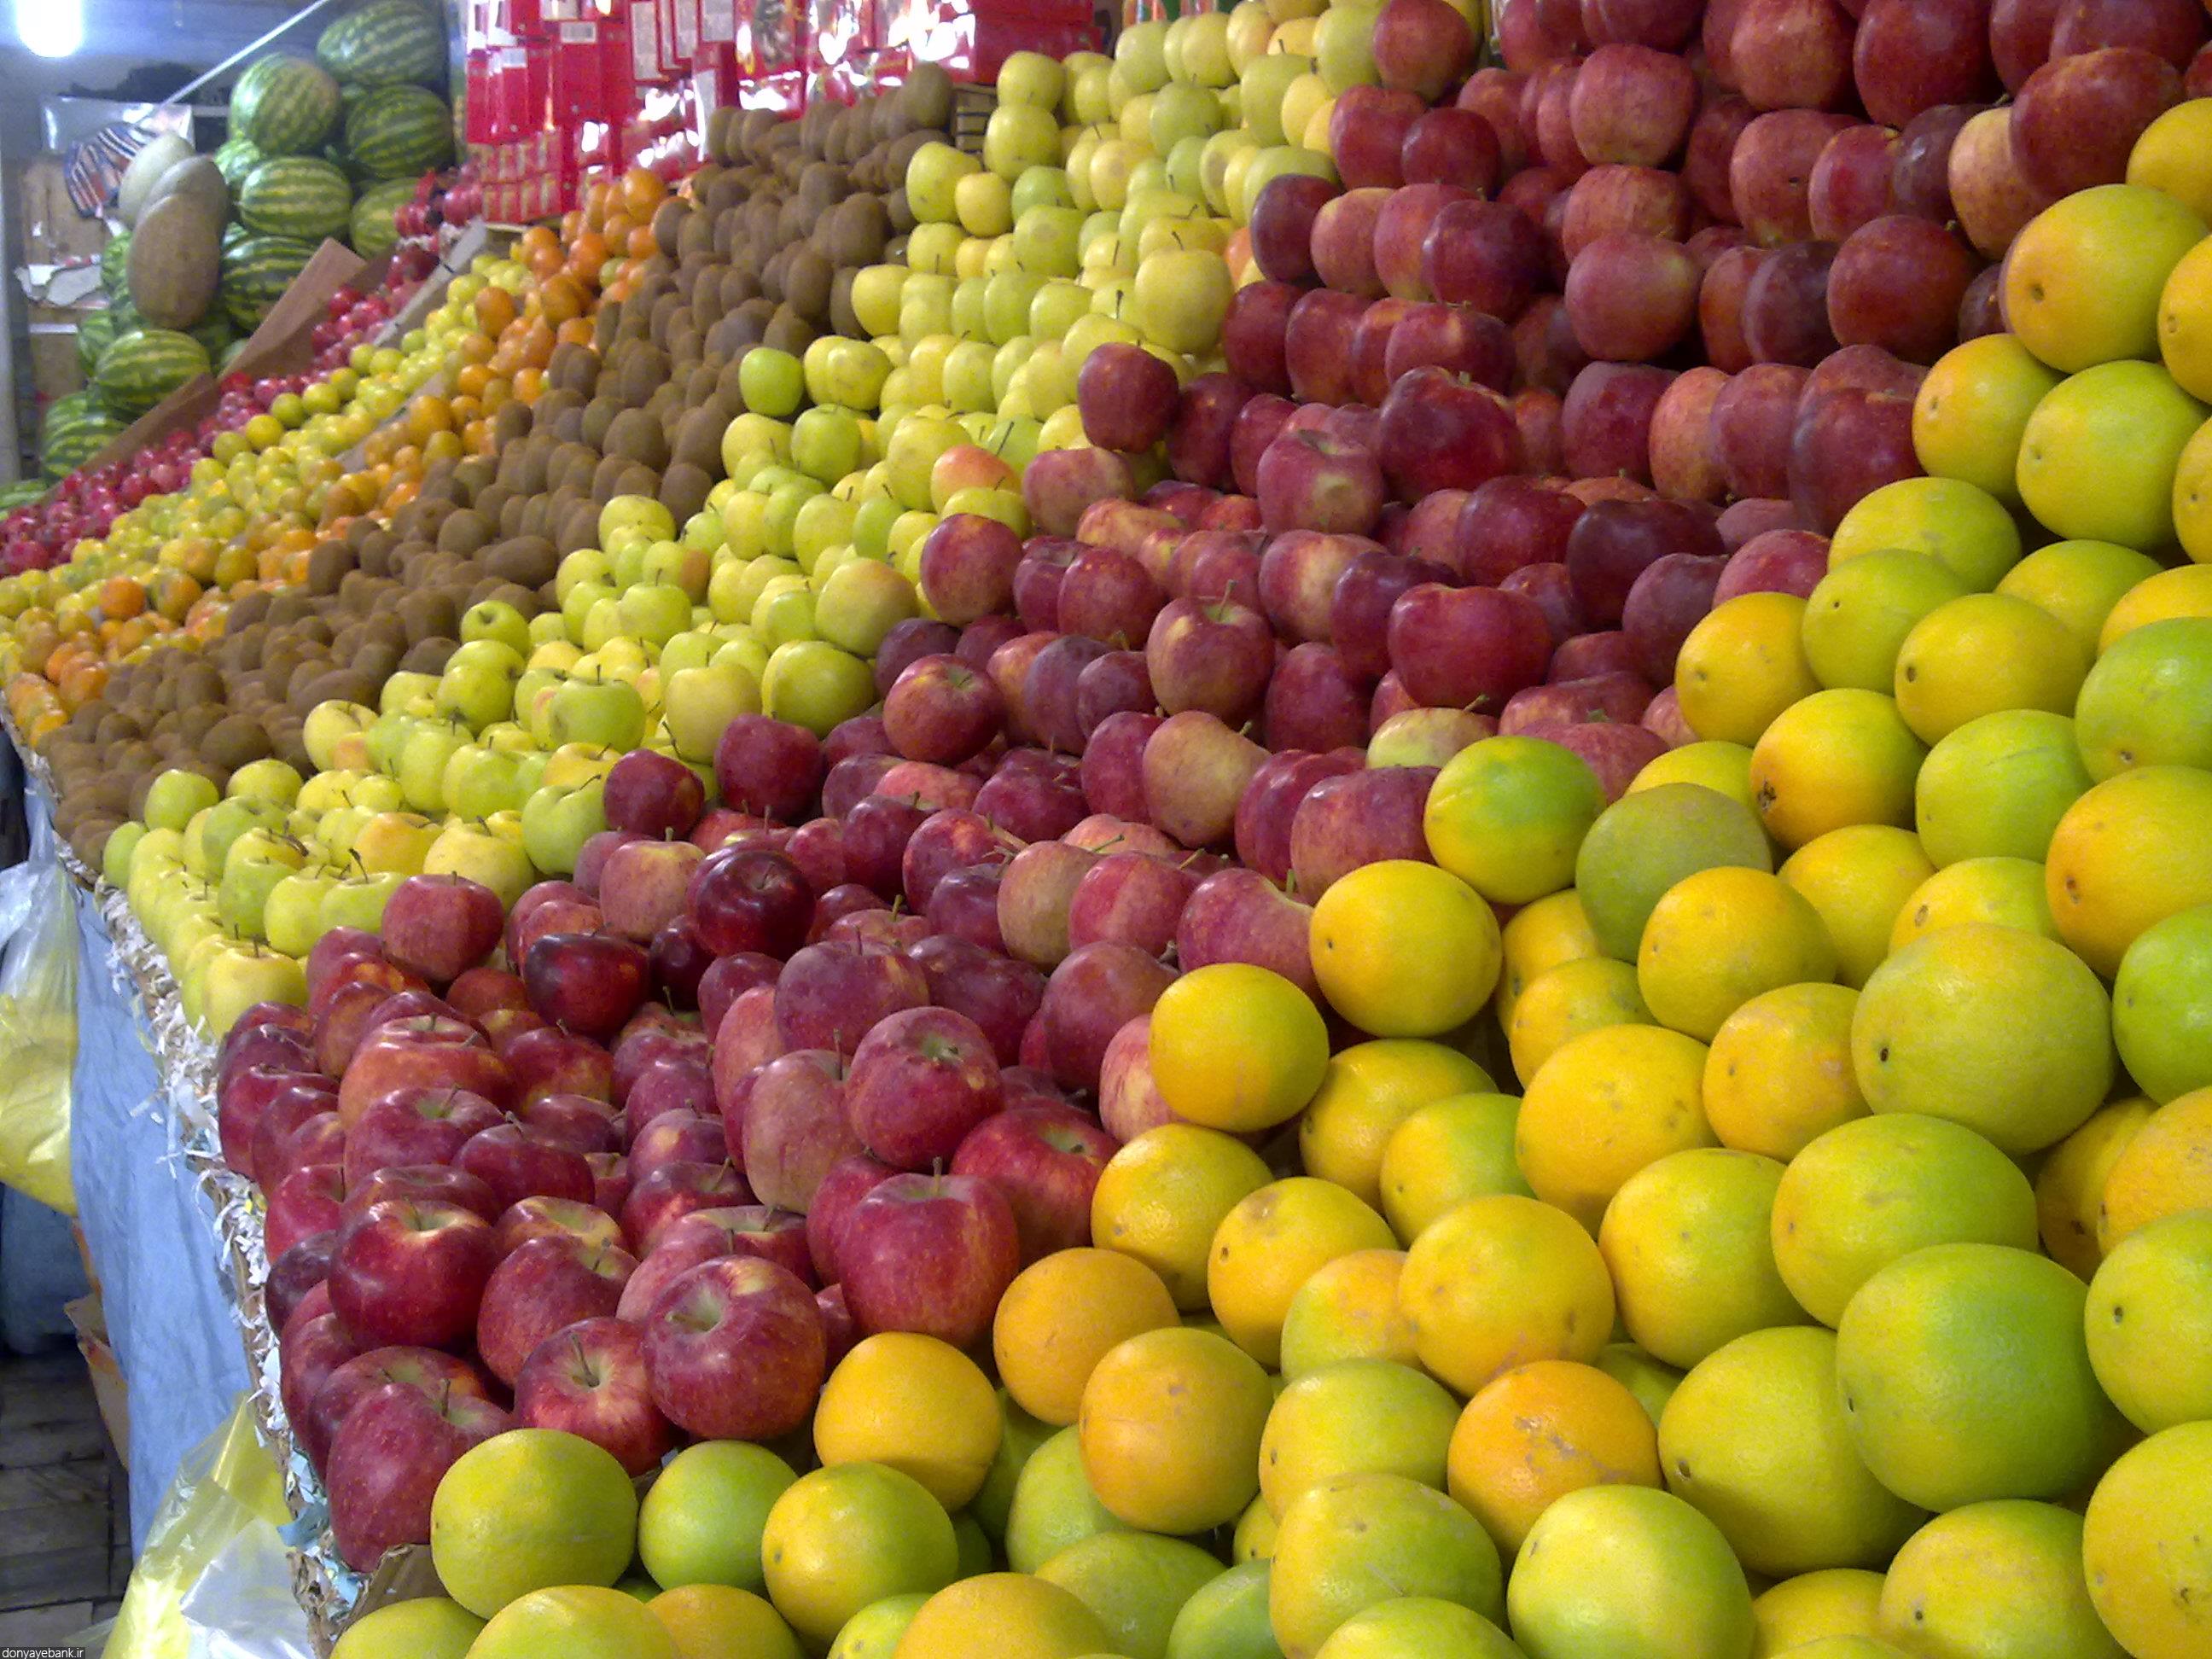 توزیع ۷۰هزار تن سیب و پرتقال شب عید از امروز با ۱۰ تا ۲۰درصد تخفیف